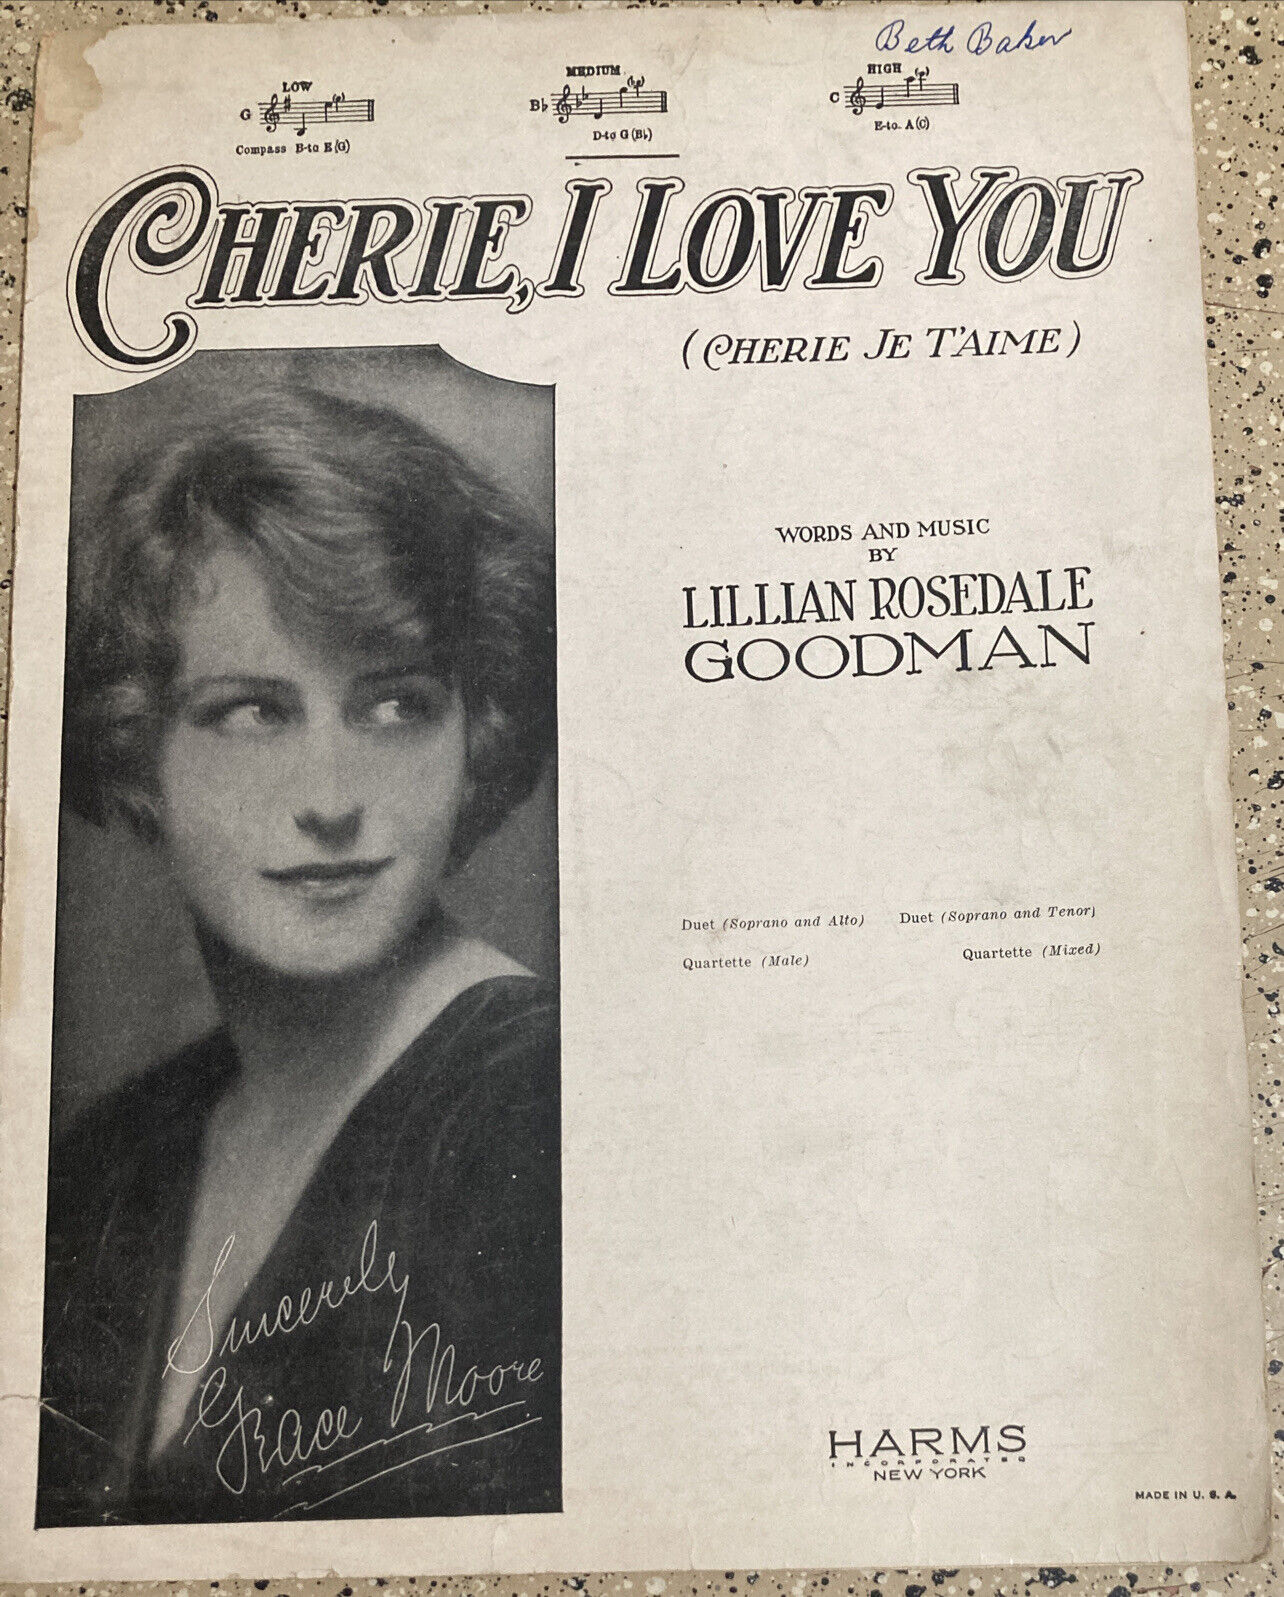 VINTAGE SHEET MUSIC 1926 CHERIE, I LOVE YOU LILLIAN ROSEDALE GOODMAN 